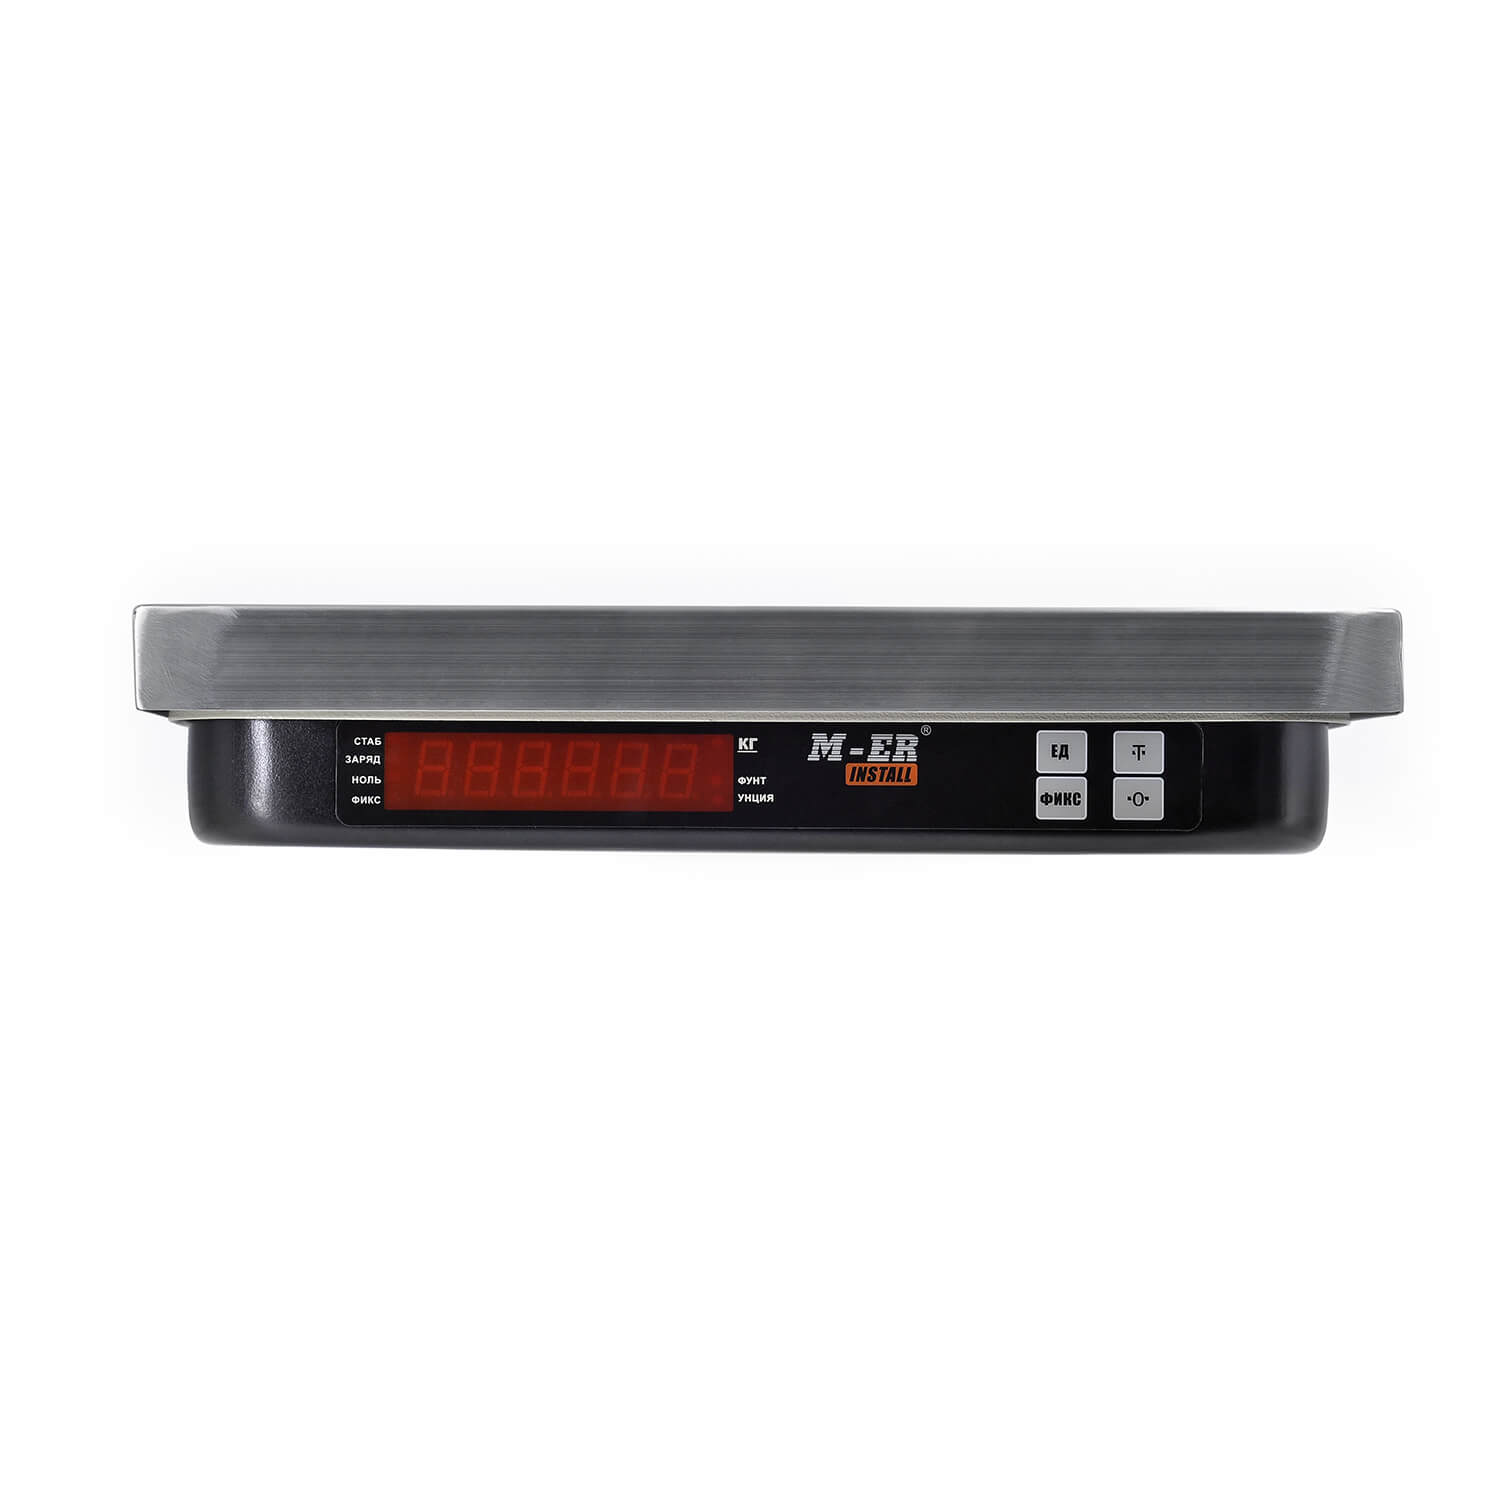 Фасовочные настольные весы M-ER 221 F-32.5 "Install" RS-232 и USB (3234)